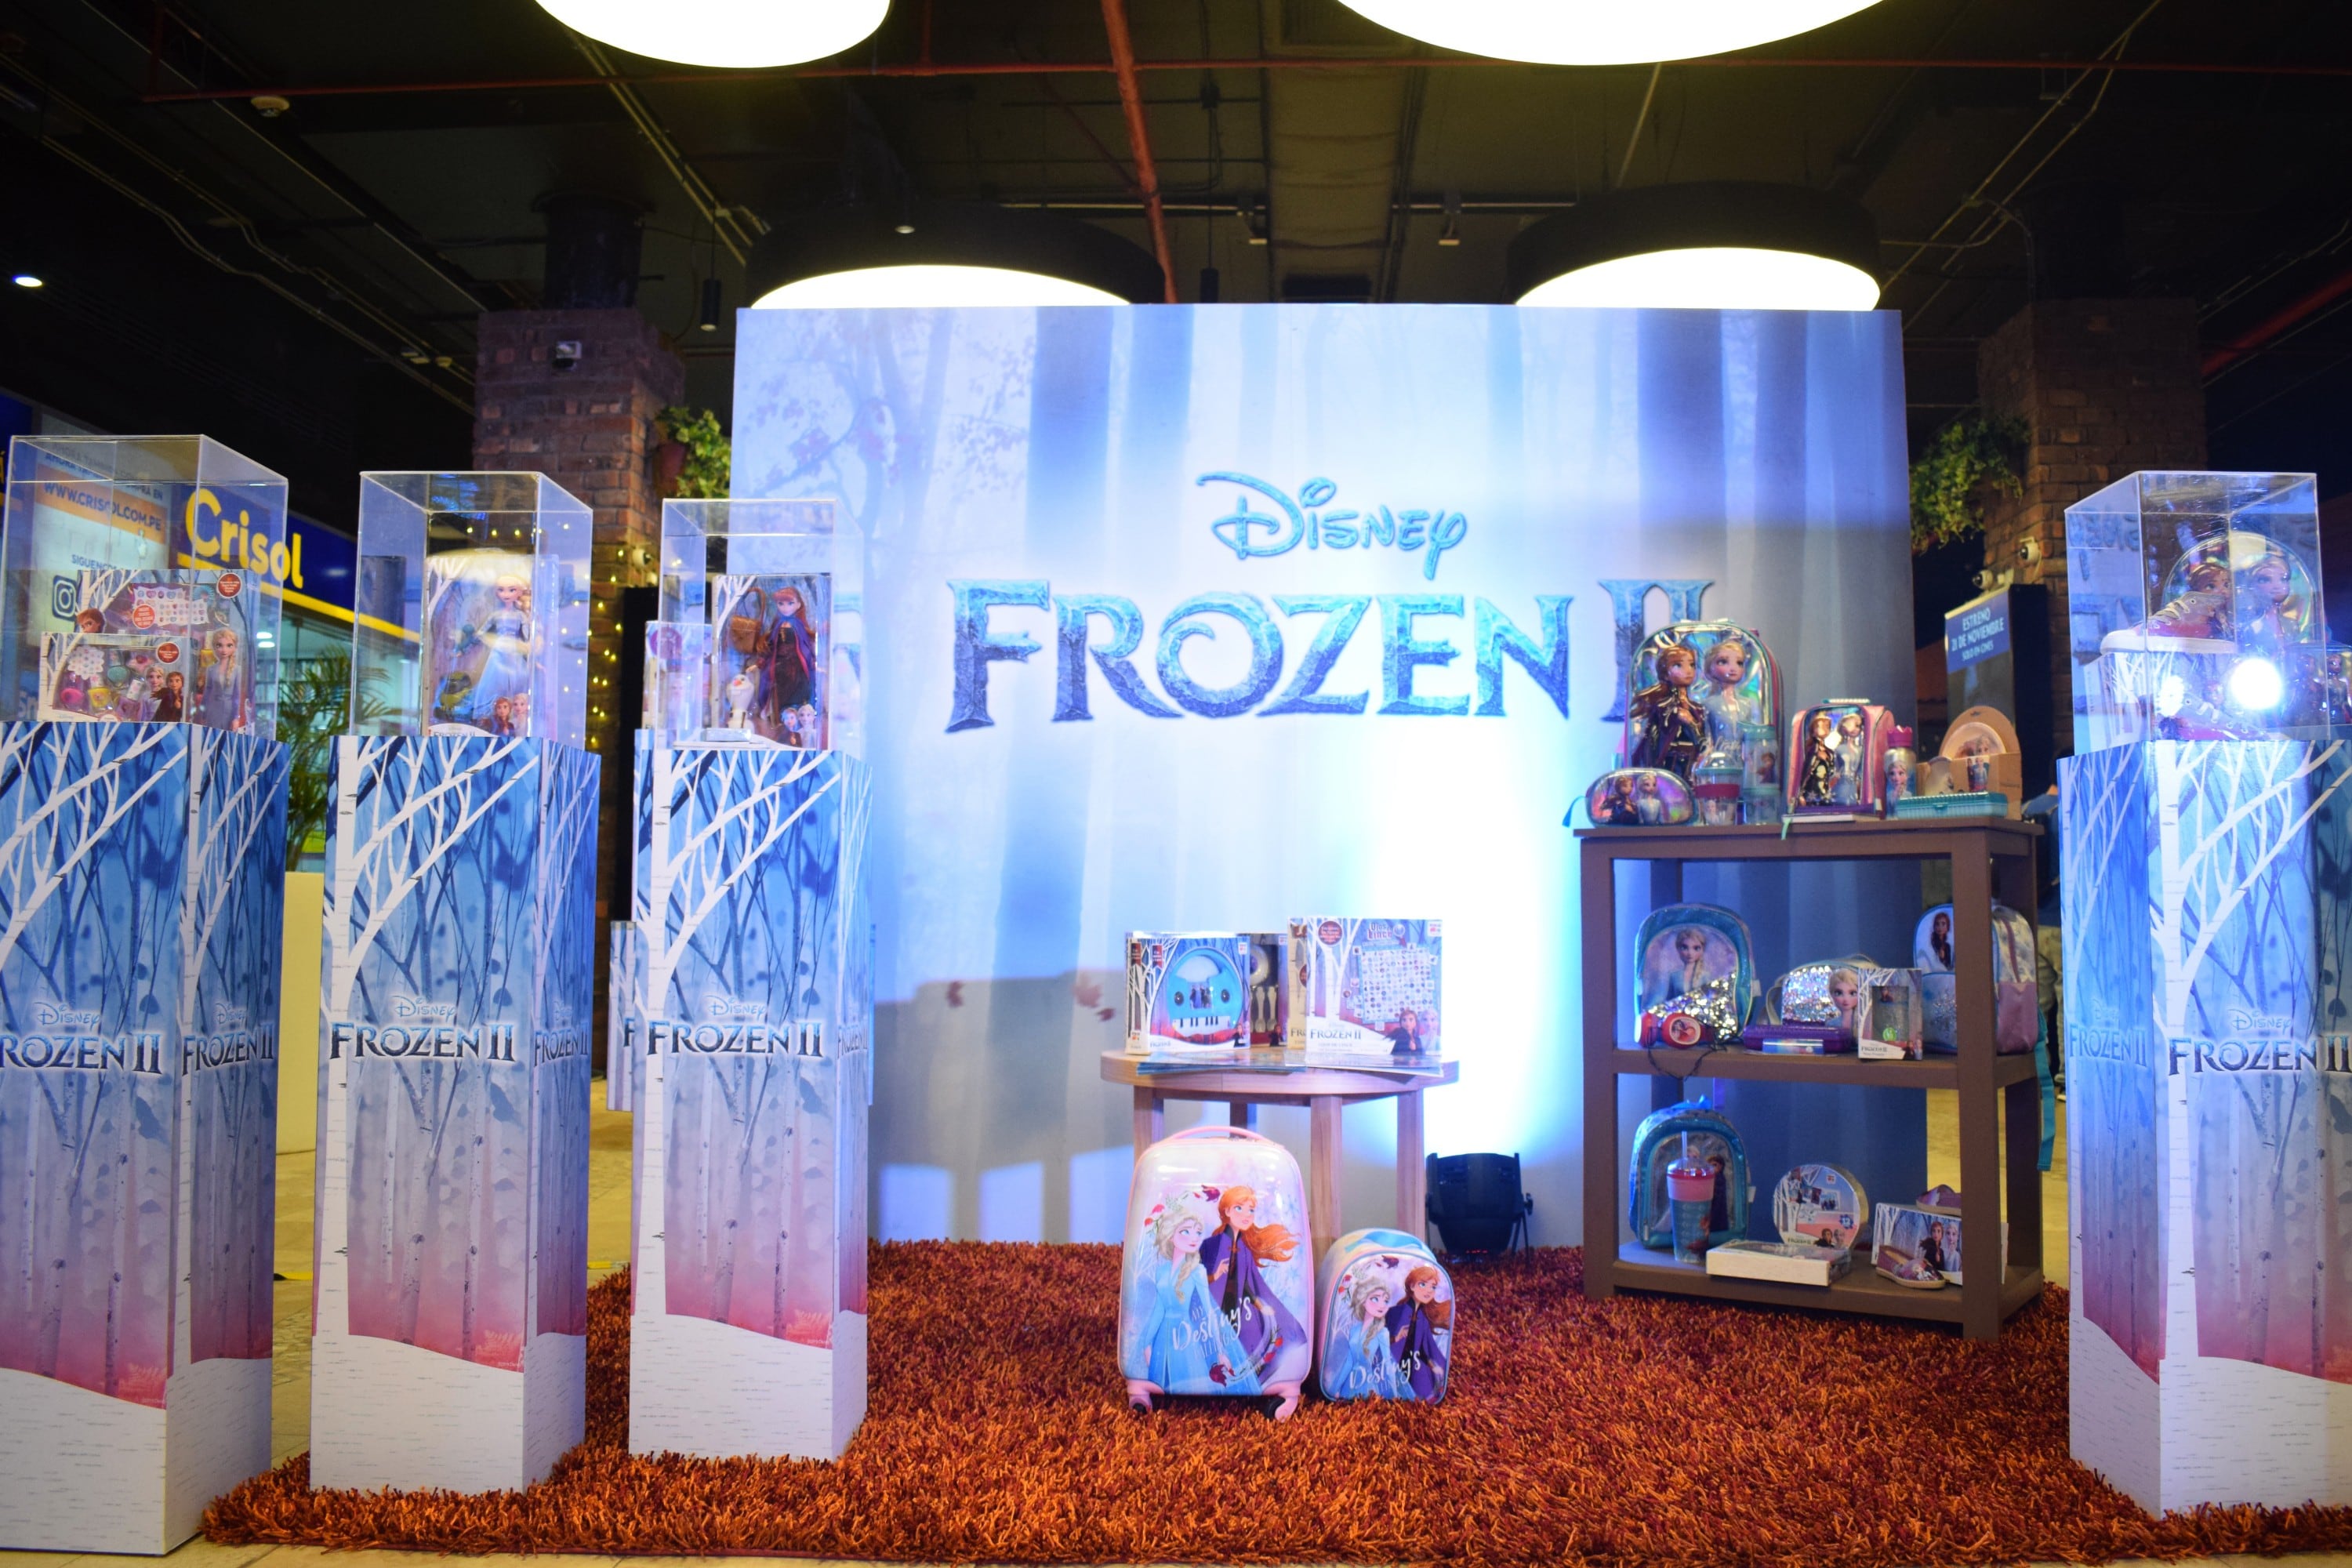 La cinta animada que cuenta las vivencias de Elsa, Anna, Olaf y Kristoff regresa con más aventuras este jueves 21 de noviembre. (Fotos: Luis Pino Robles)